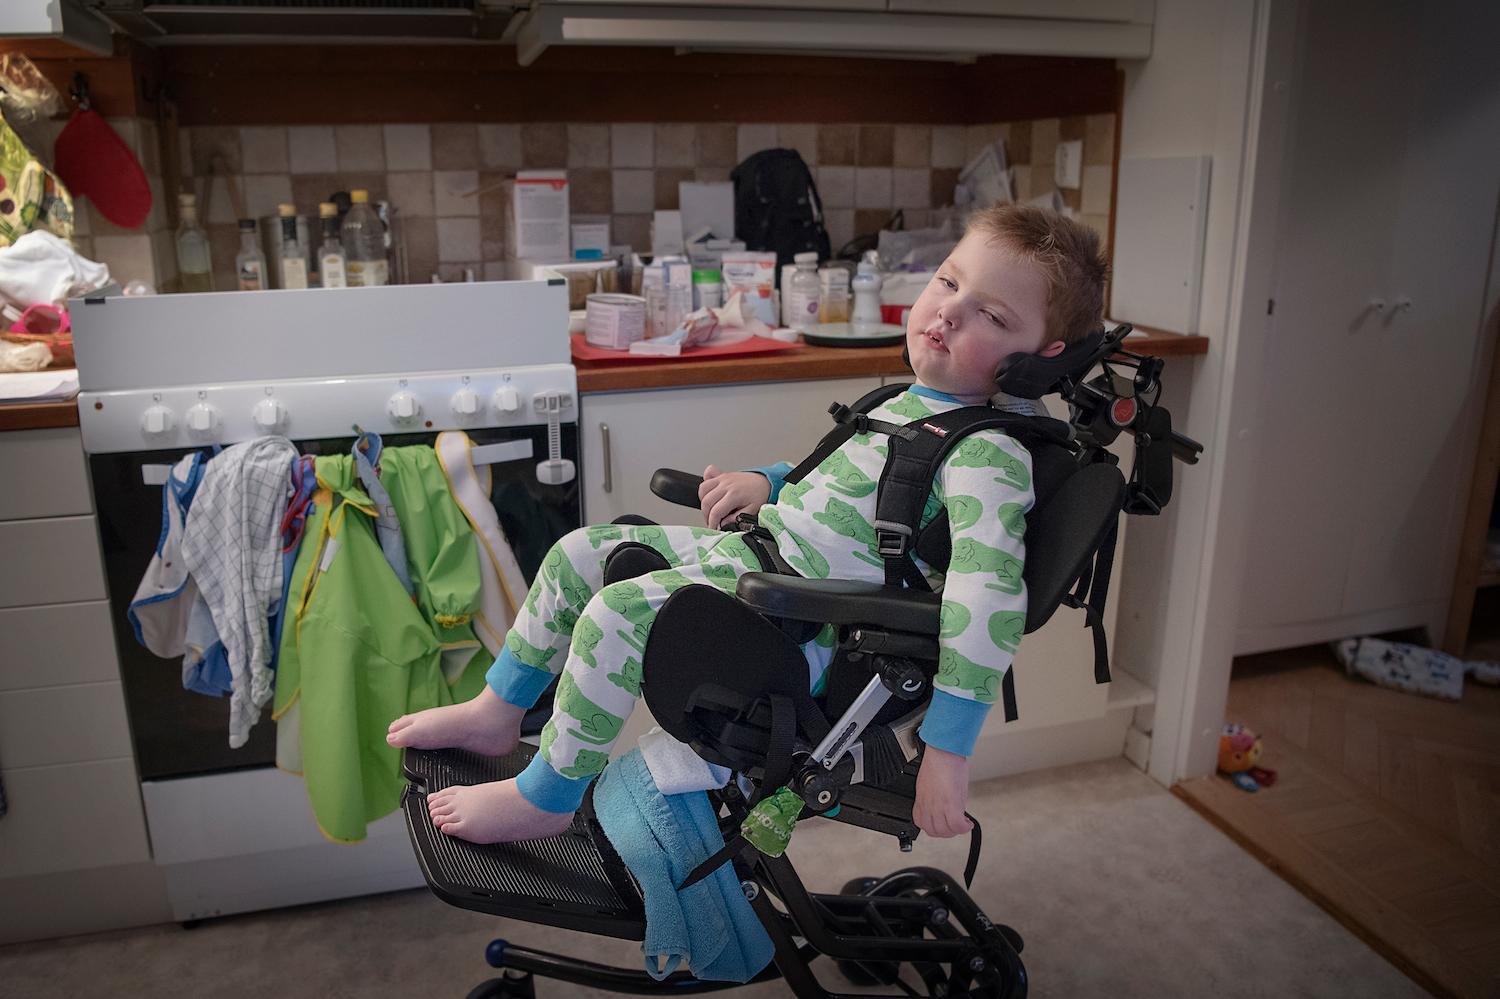 "Försäkringskassan jagar kostnader och det upplever vi går ut över de allra sjukaste, som Olof. Det slår blint. Det kan inte vara meningen att de svårast sjuka barnen ska drabbas", säger Karolina Hermansson, mamma till Olof, 2.